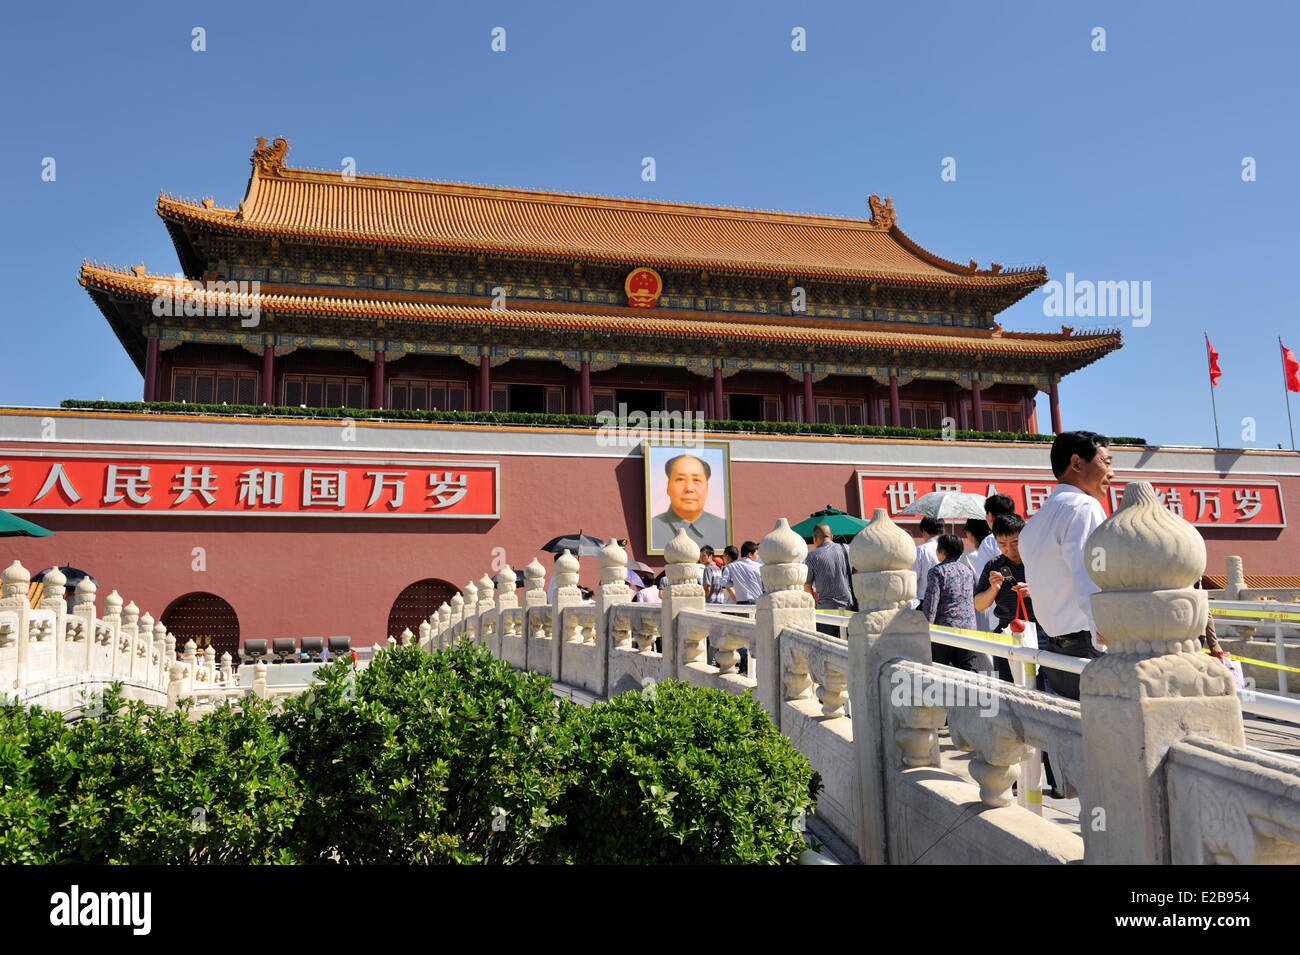 La Chine, Beijing, Imperial Palace, Forbidden City, classé au Patrimoine Mondial de l'UNESCO, Tian'anmen gate à Tian'anmen Banque D'Images